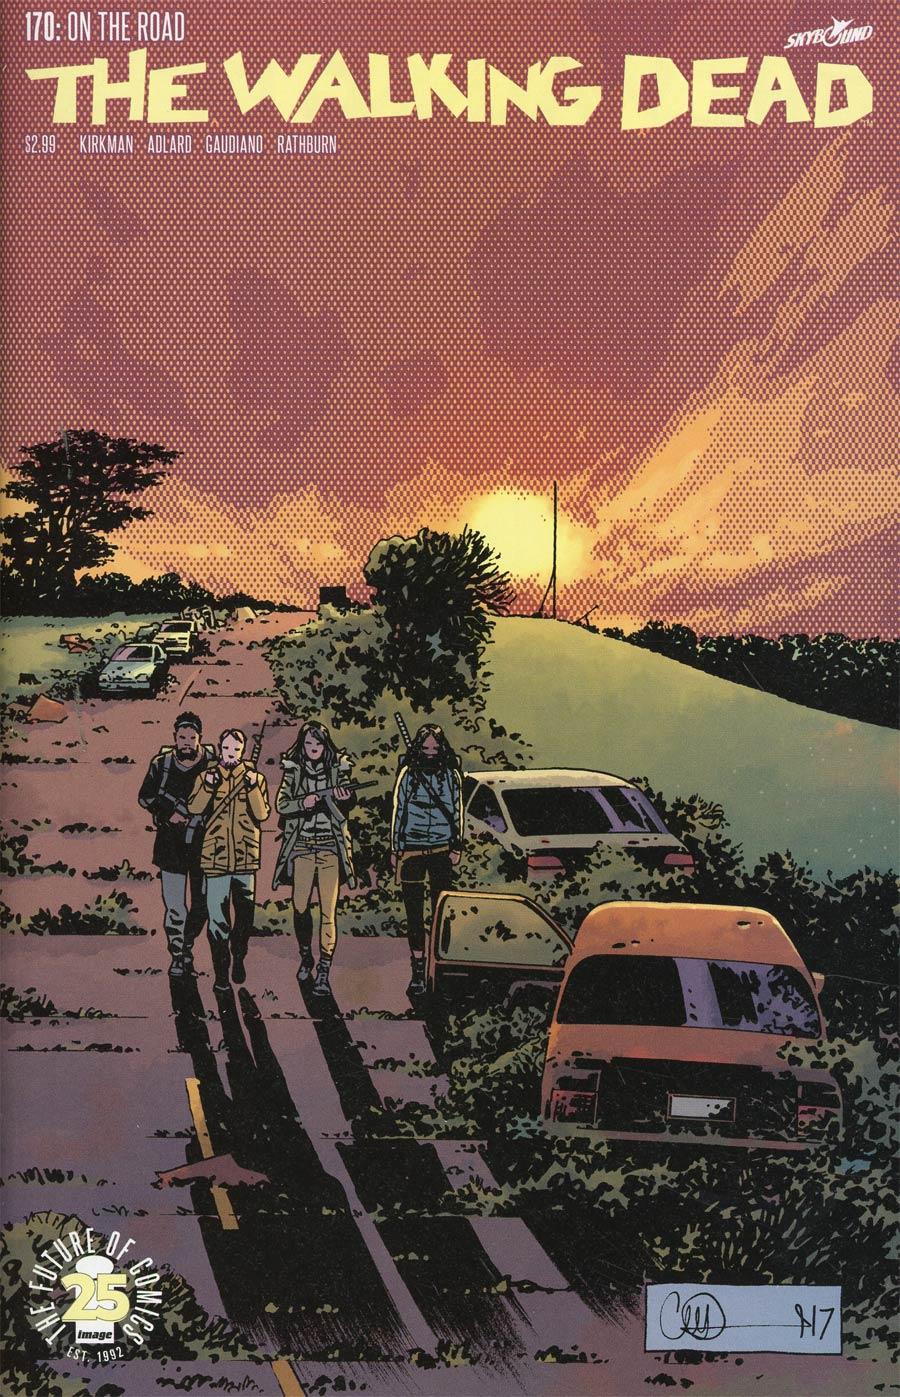 Walking Dead Vol. 1 #170